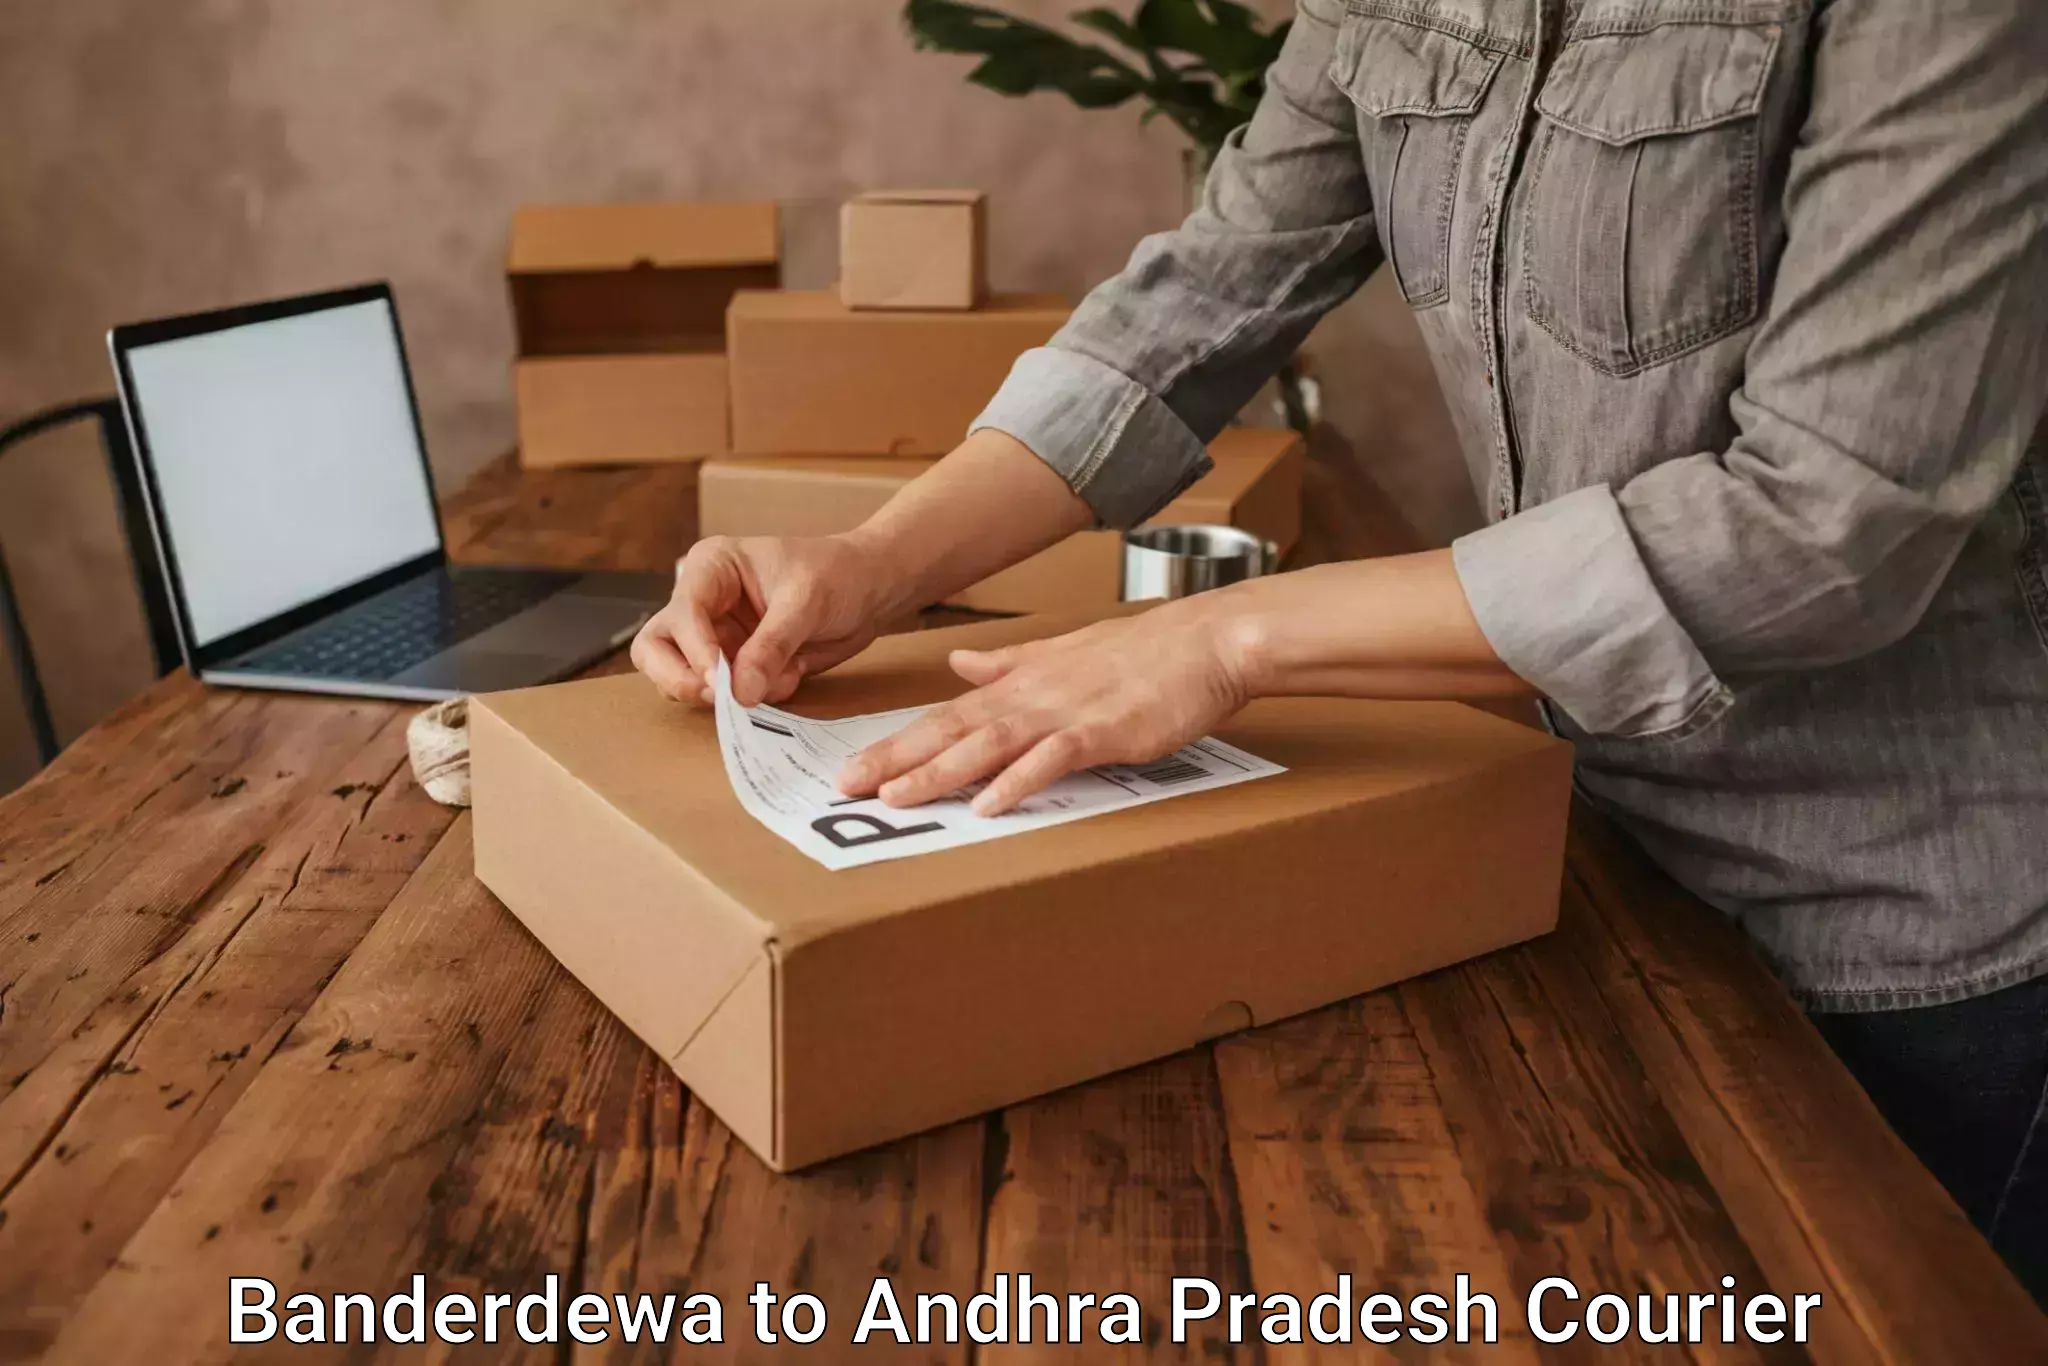 International courier networks Banderdewa to Achampet Palnadu